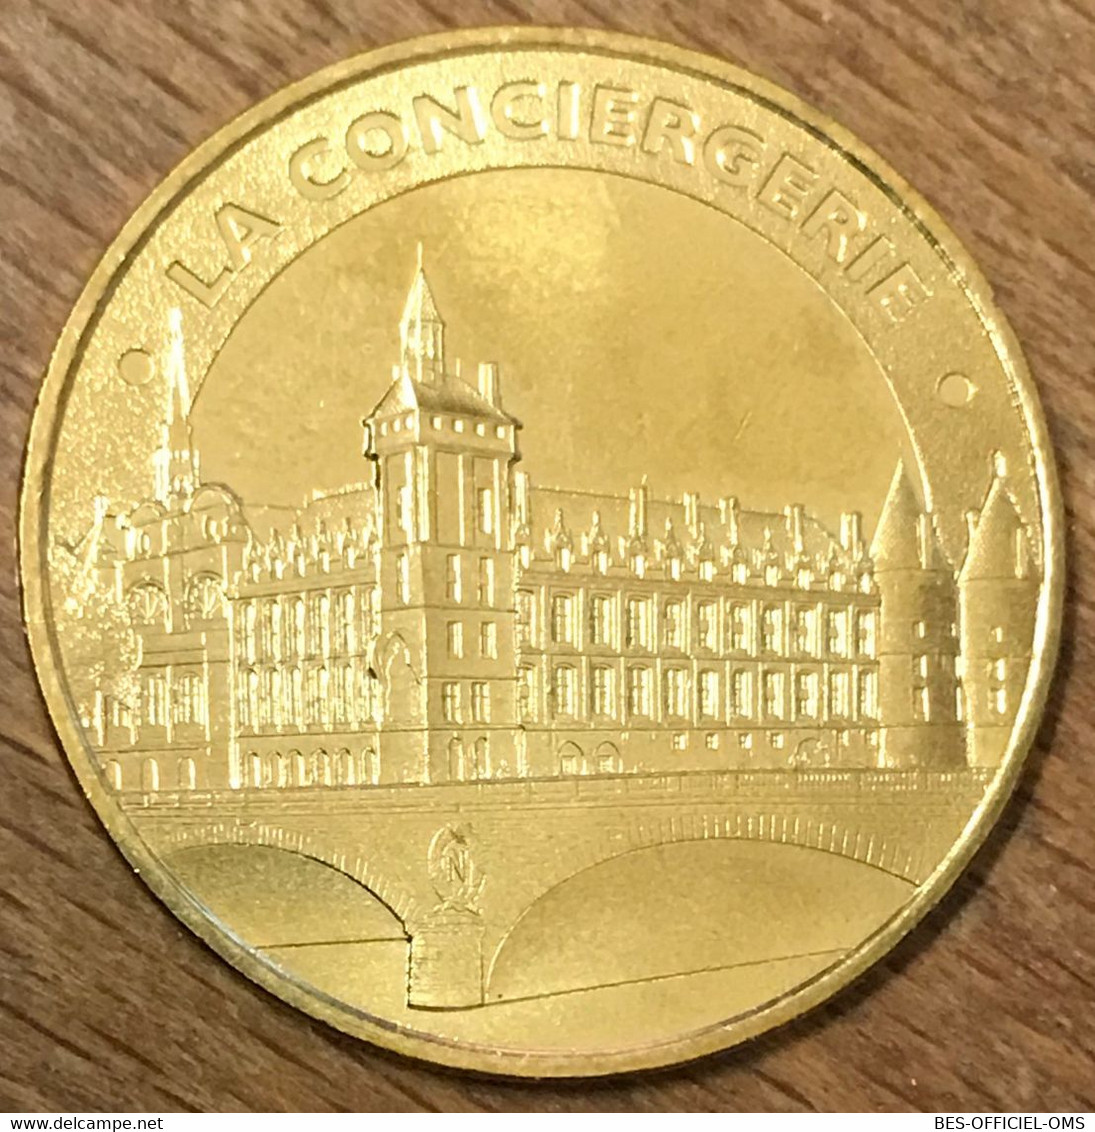 75001 PARIS LA CONCIERGERIE MDP 2017 MÉDAILLE SOUVENIR MONNAIE DE PARIS JETON TOURISTIQUE TOKEN MEDALS COINS - 2017